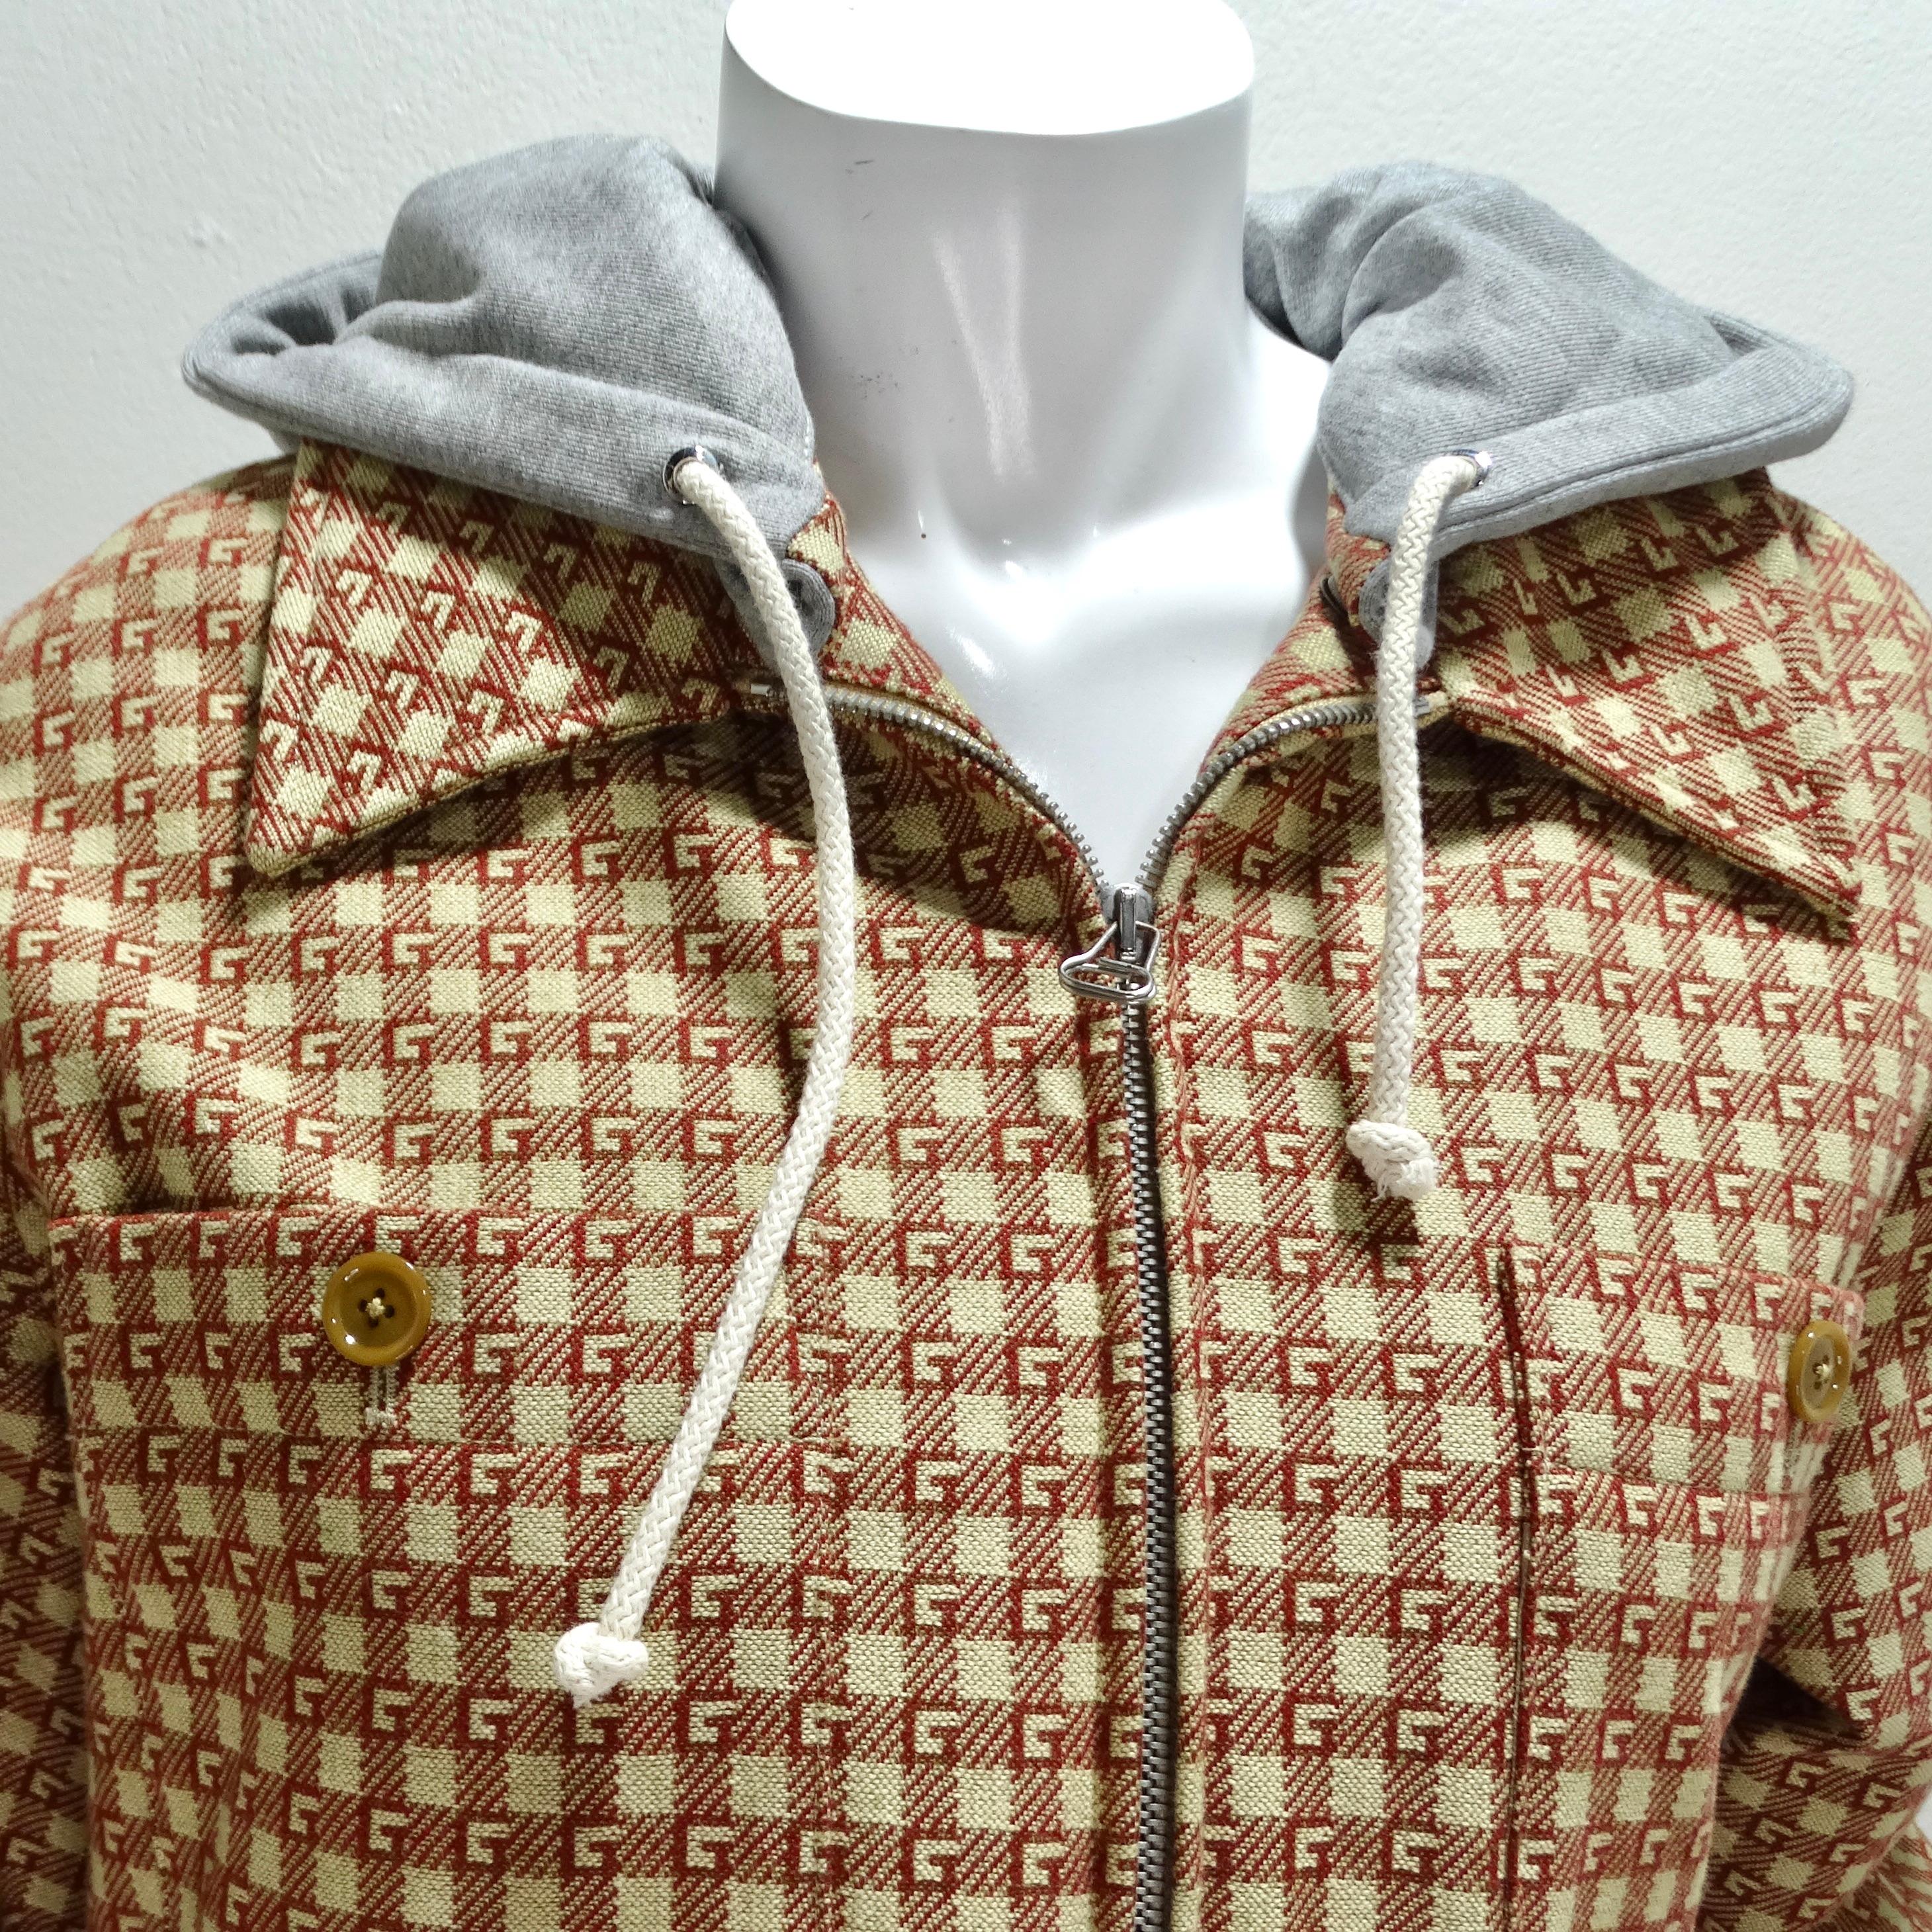 Die kultige Gucci GG Monogram Hooded Jacket ist ein zeitloses und vielseitiges Stück, das Luxus und Stil ausstrahlt. Diese klassische Button-up-Jacke aus hochwertiger Wolle ist mit dem charakteristischen roten und beigen GG-Monogramm von Gucci